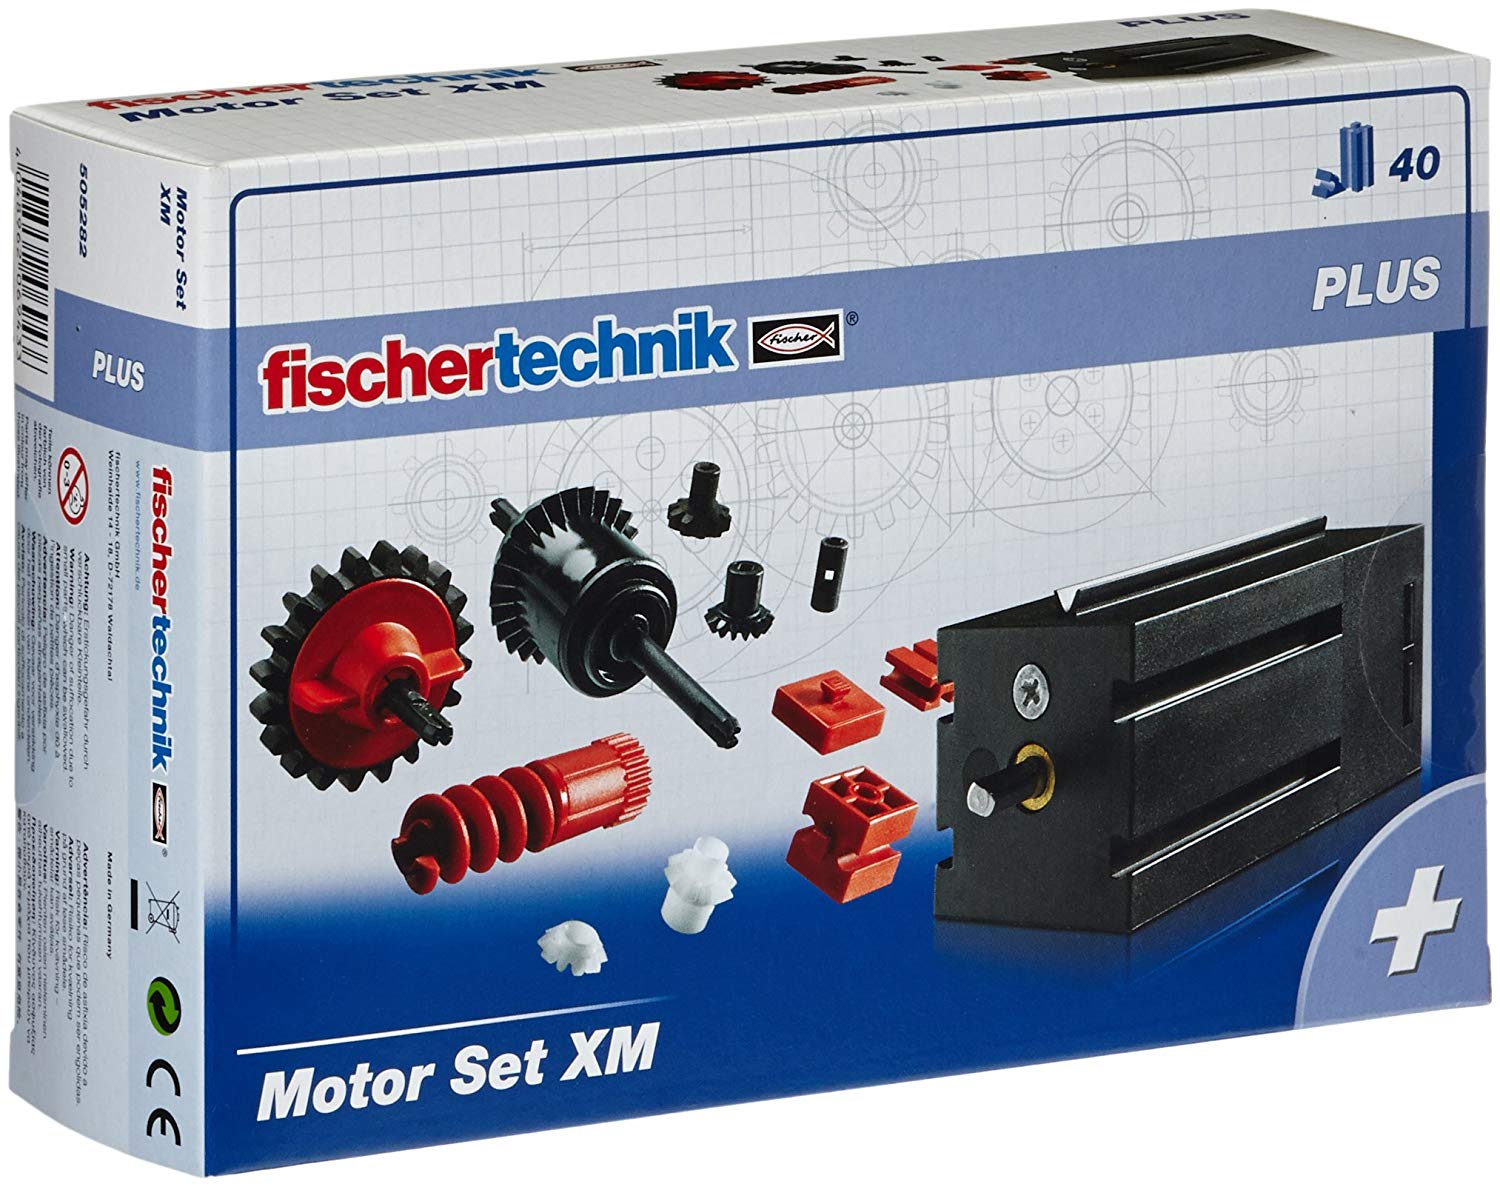 Fischertechnik Plus Motor Set Xm